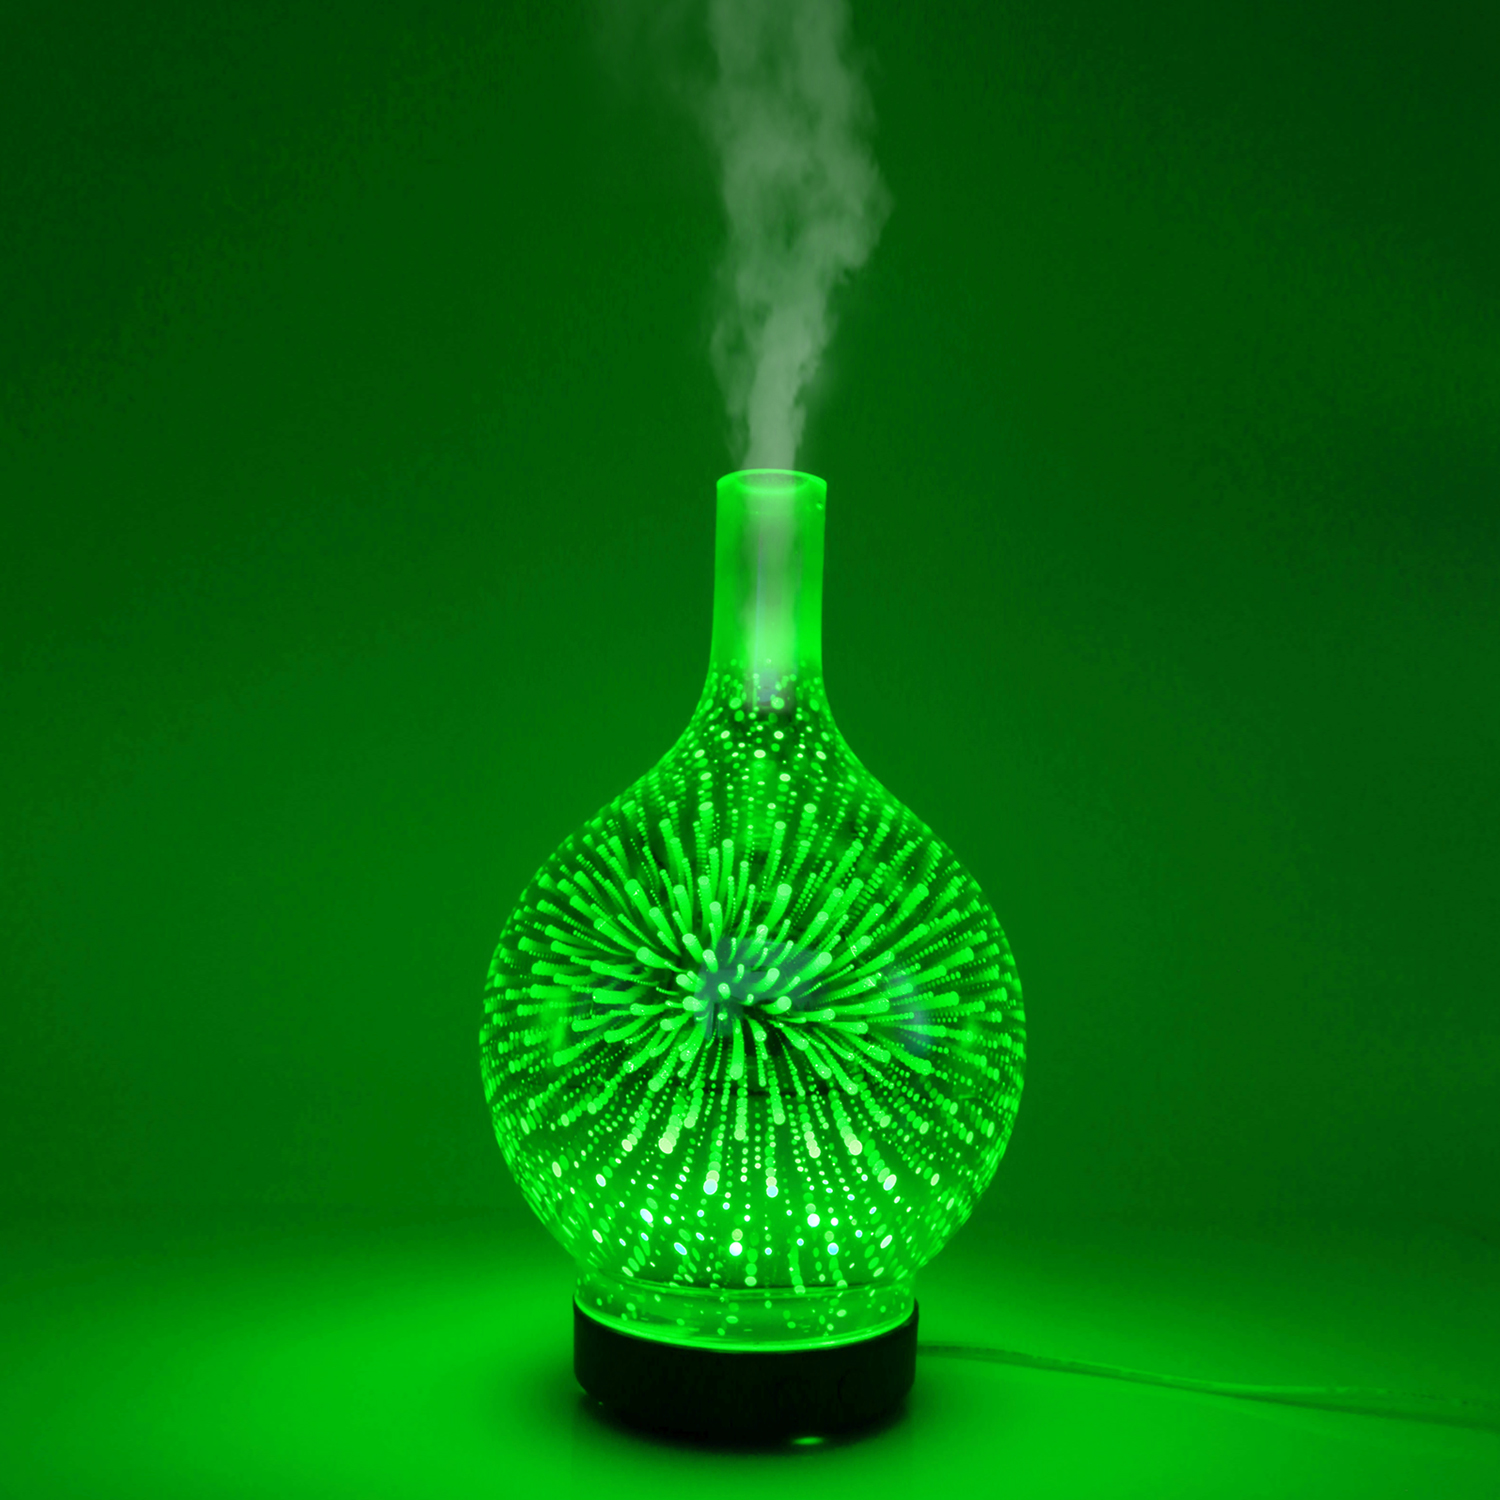 Colorful luminous fireworks pattern glass aromatherapy machine